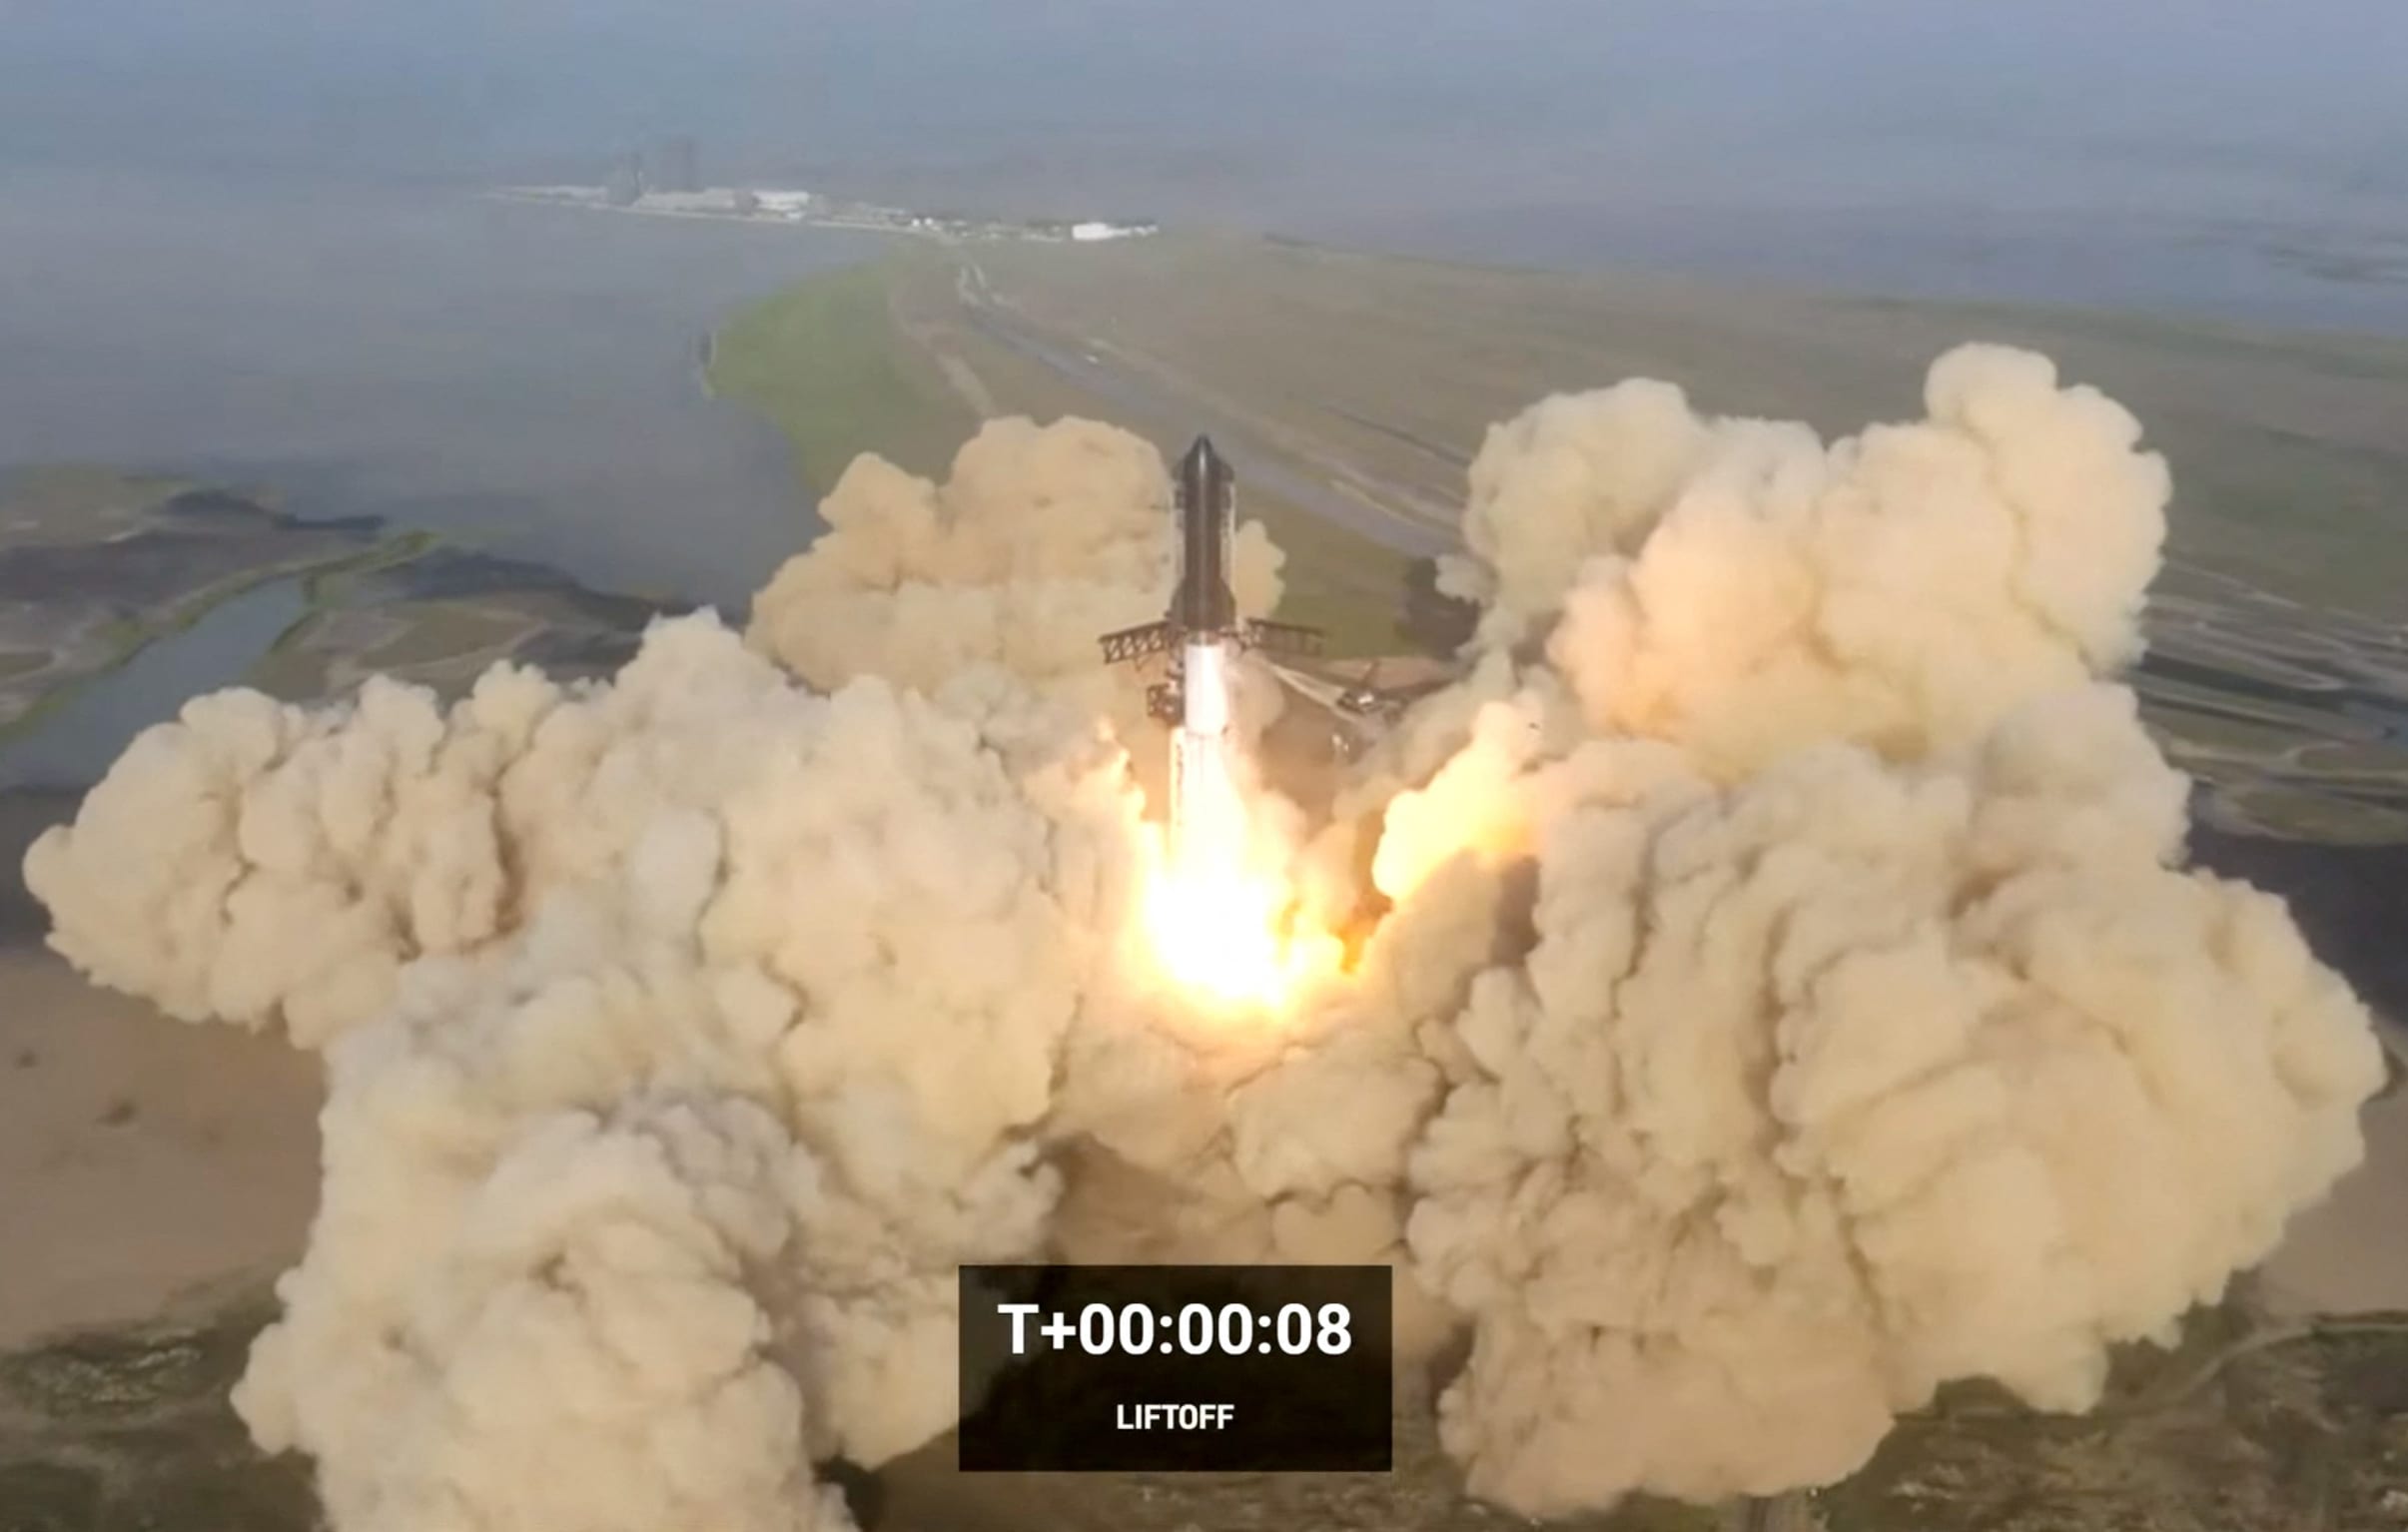 एलन मस्कको सबैभन्दा शक्तिशाली रकेटमा प्रक्षेपण गरेको ४ मिनेट पछि विस्फोट